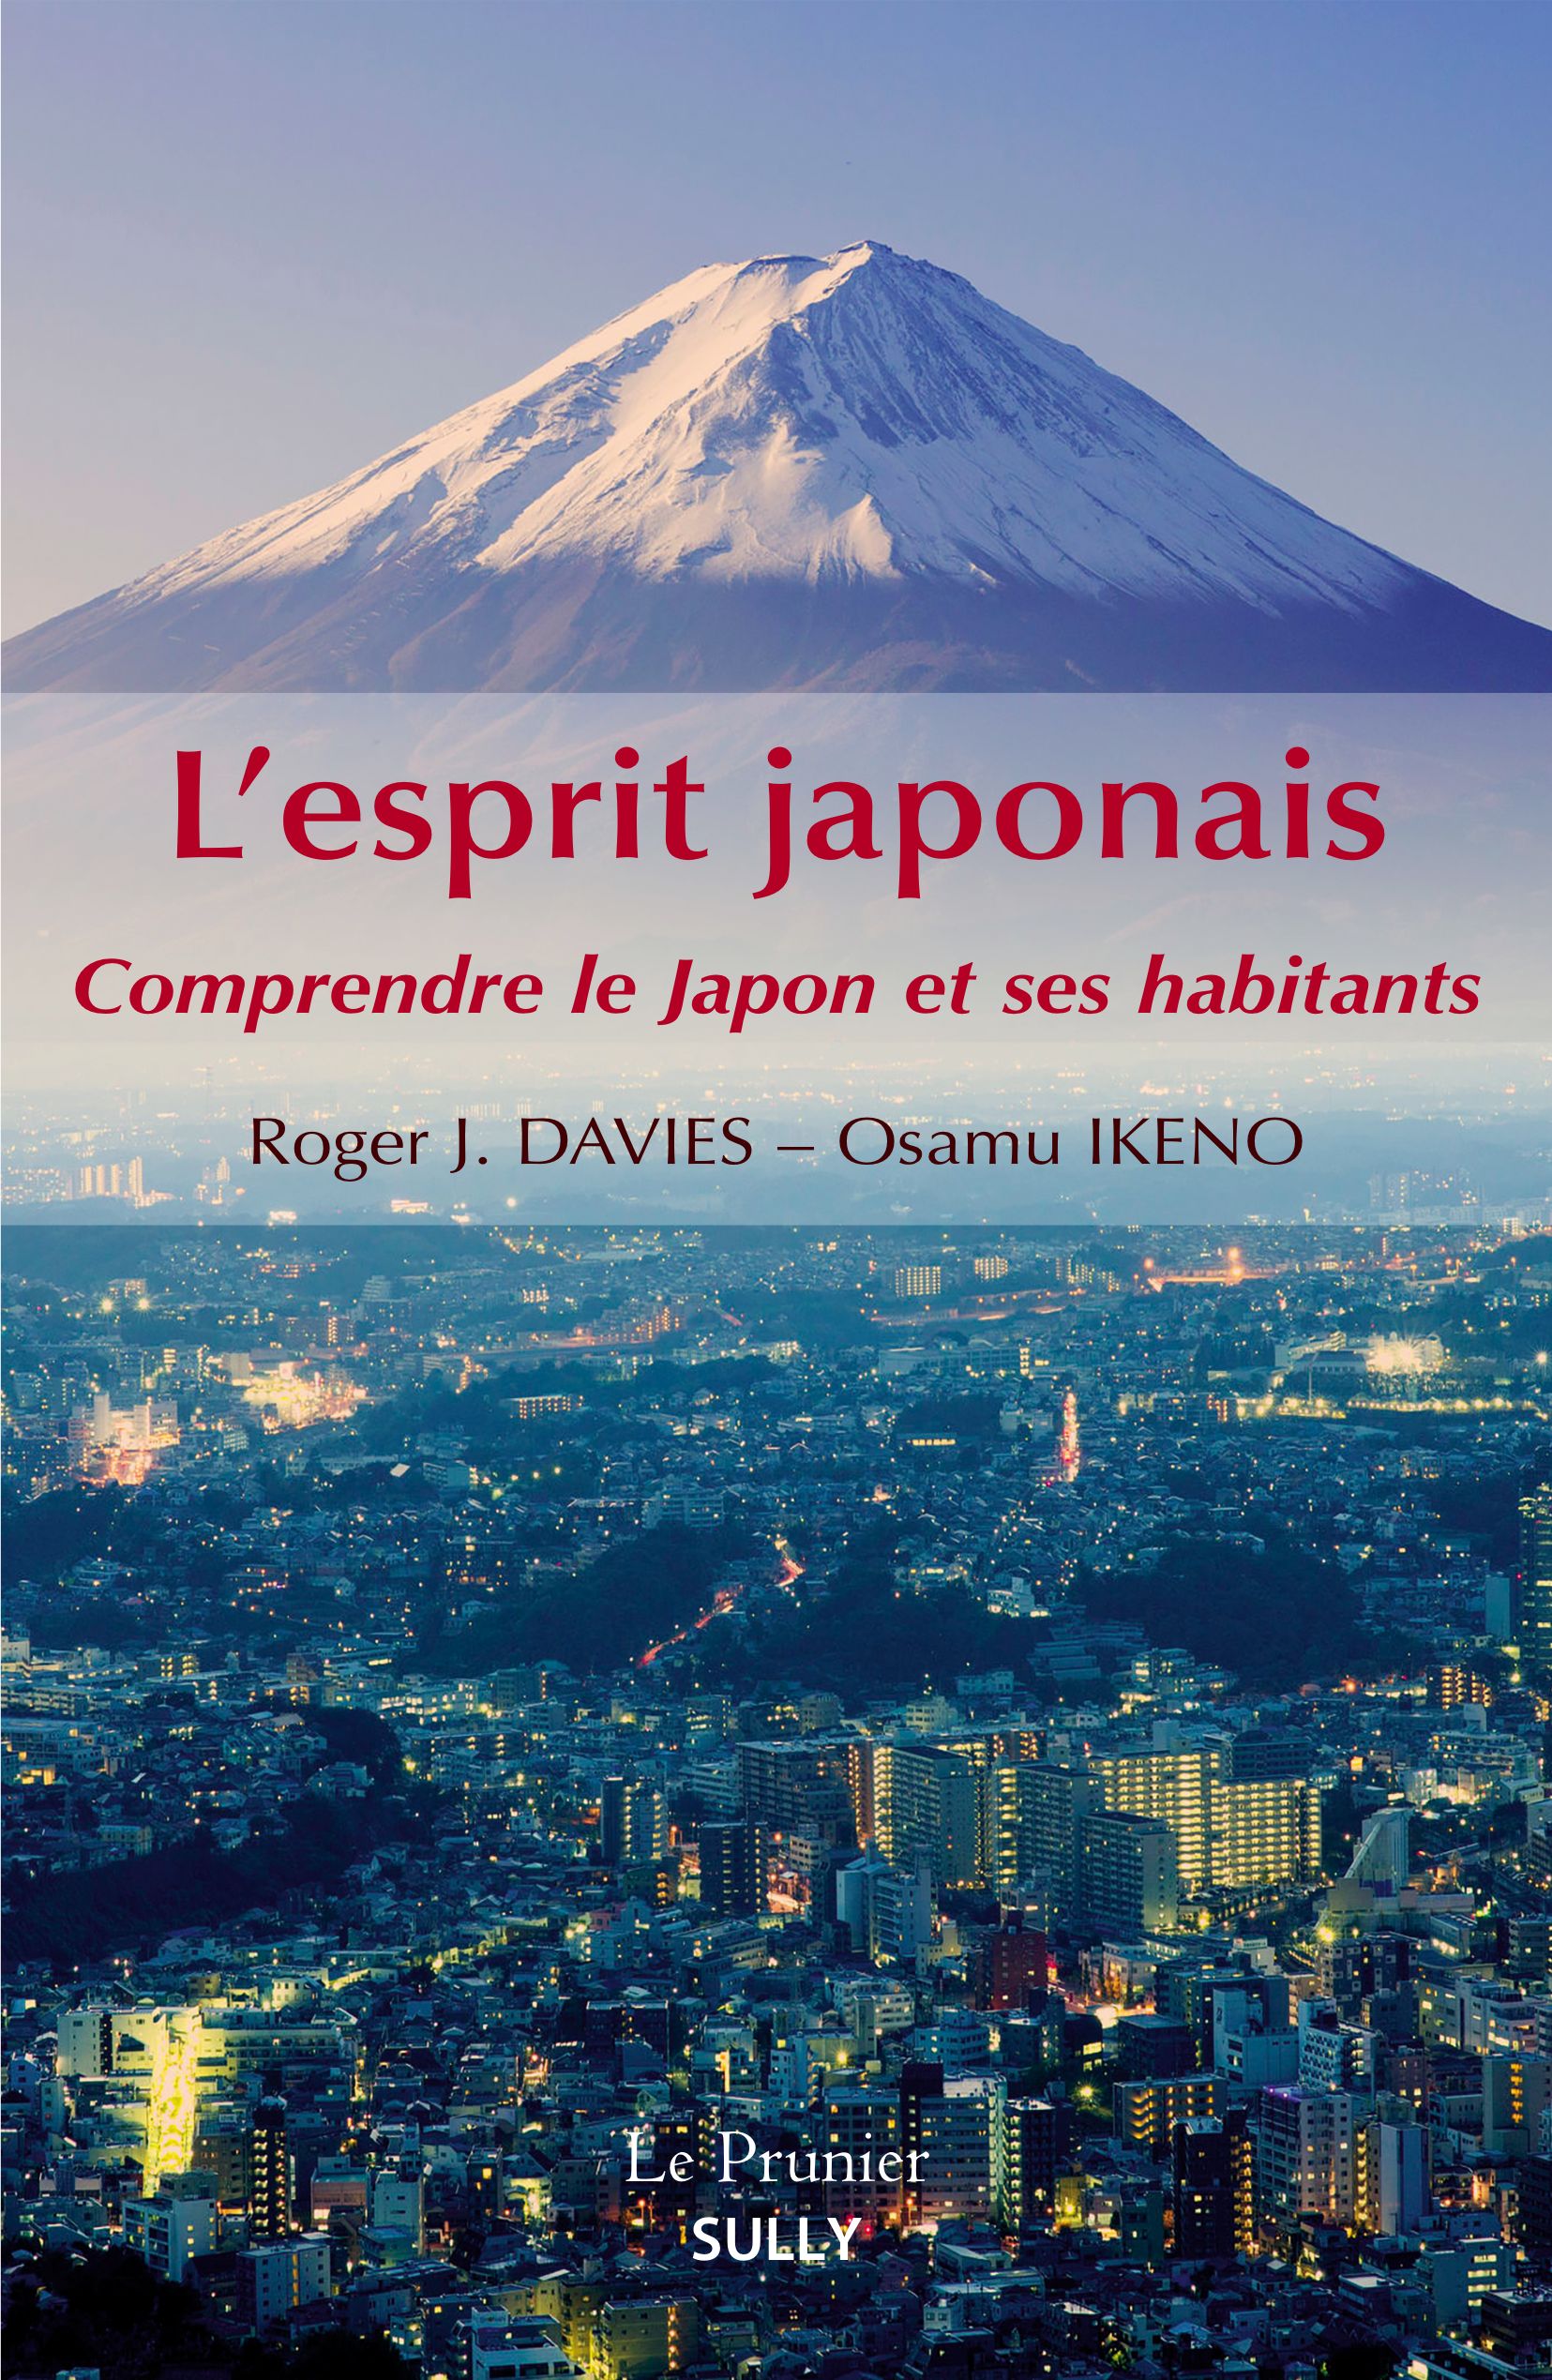 L’esprit japonais Comprendre le Japon et ses habitants de Roger J. Davies et Osamu Ikeno sort en librairie.